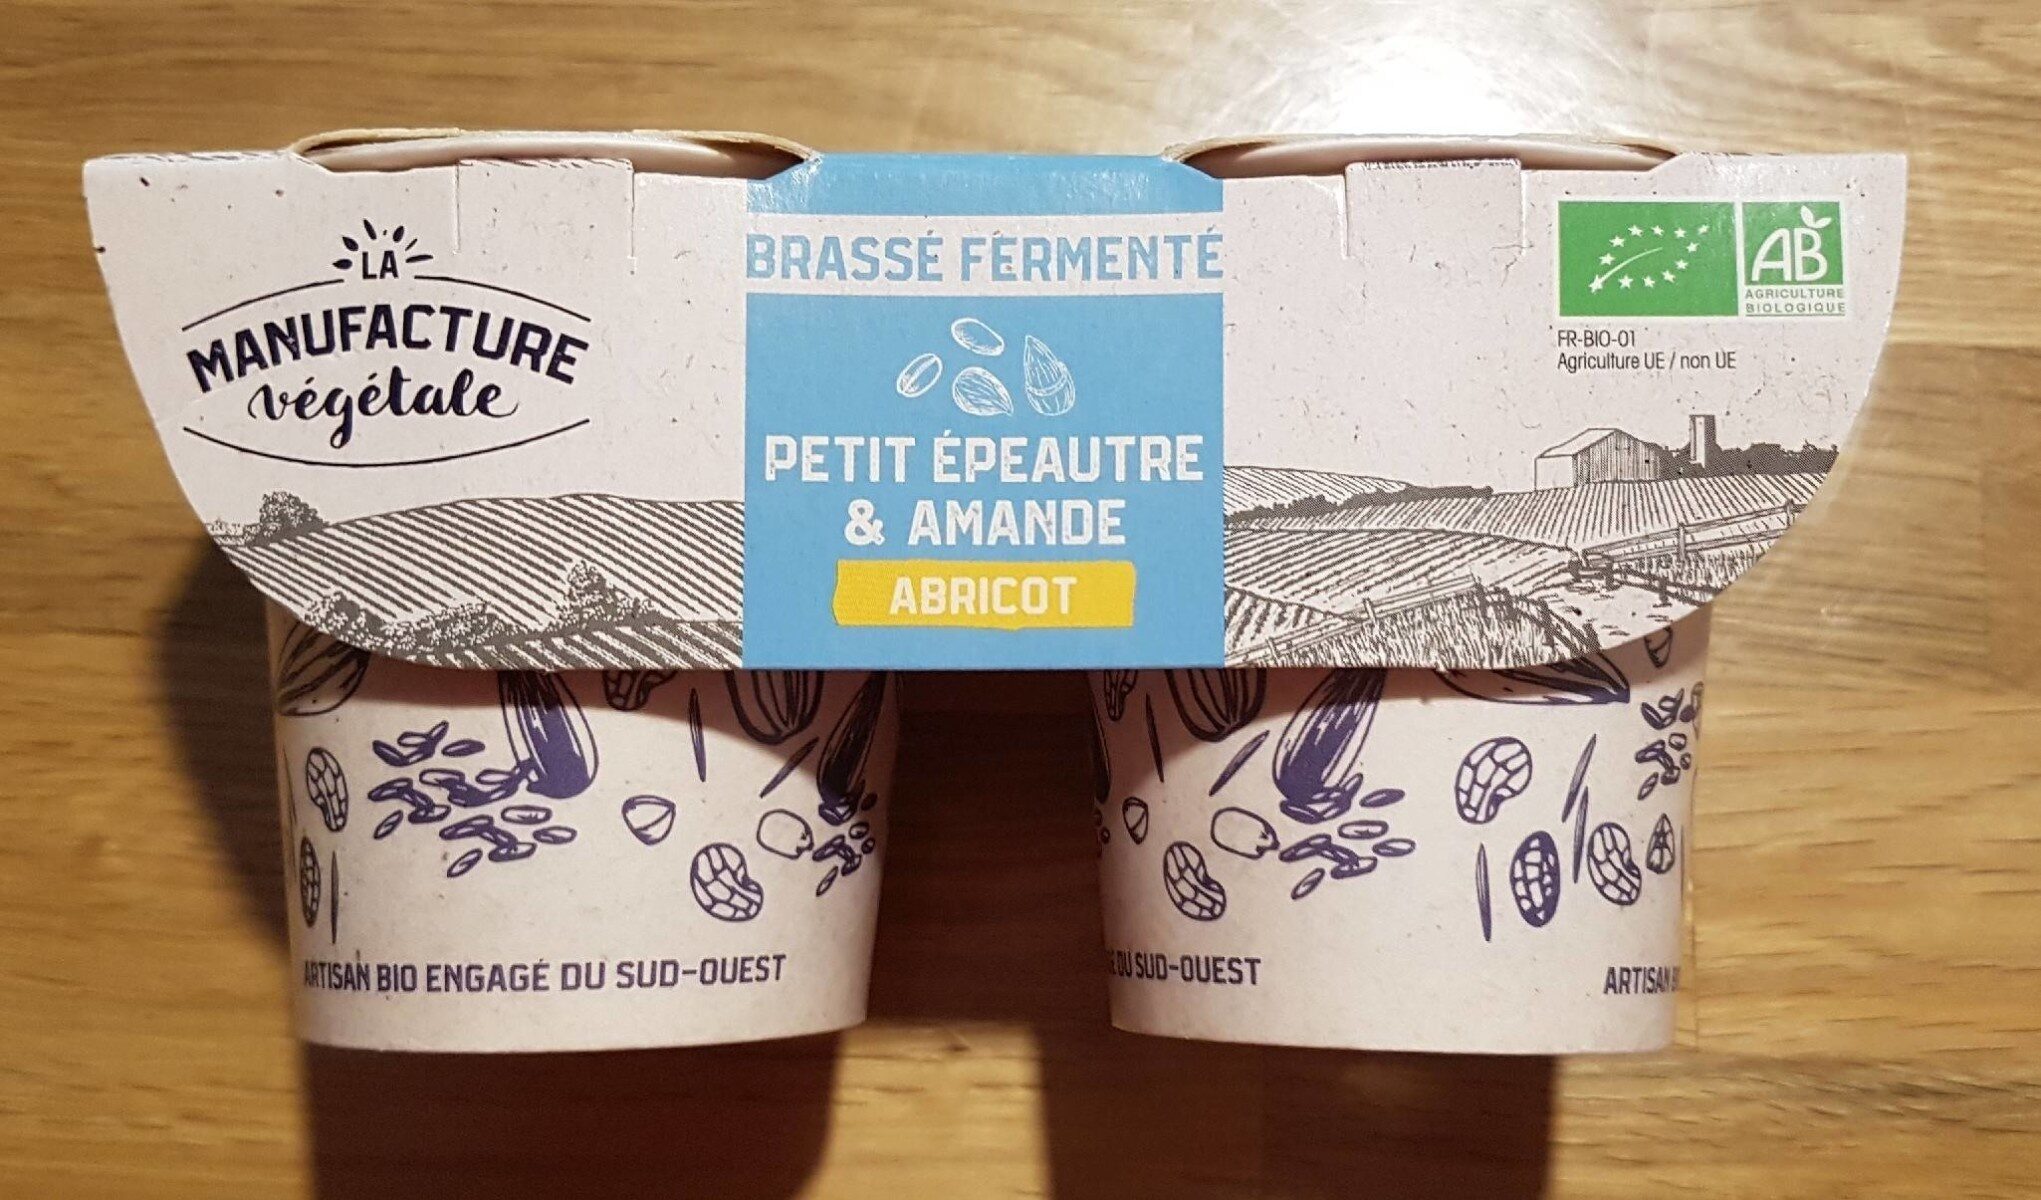 La Manufacture végétal Brasse fermentee - Produit